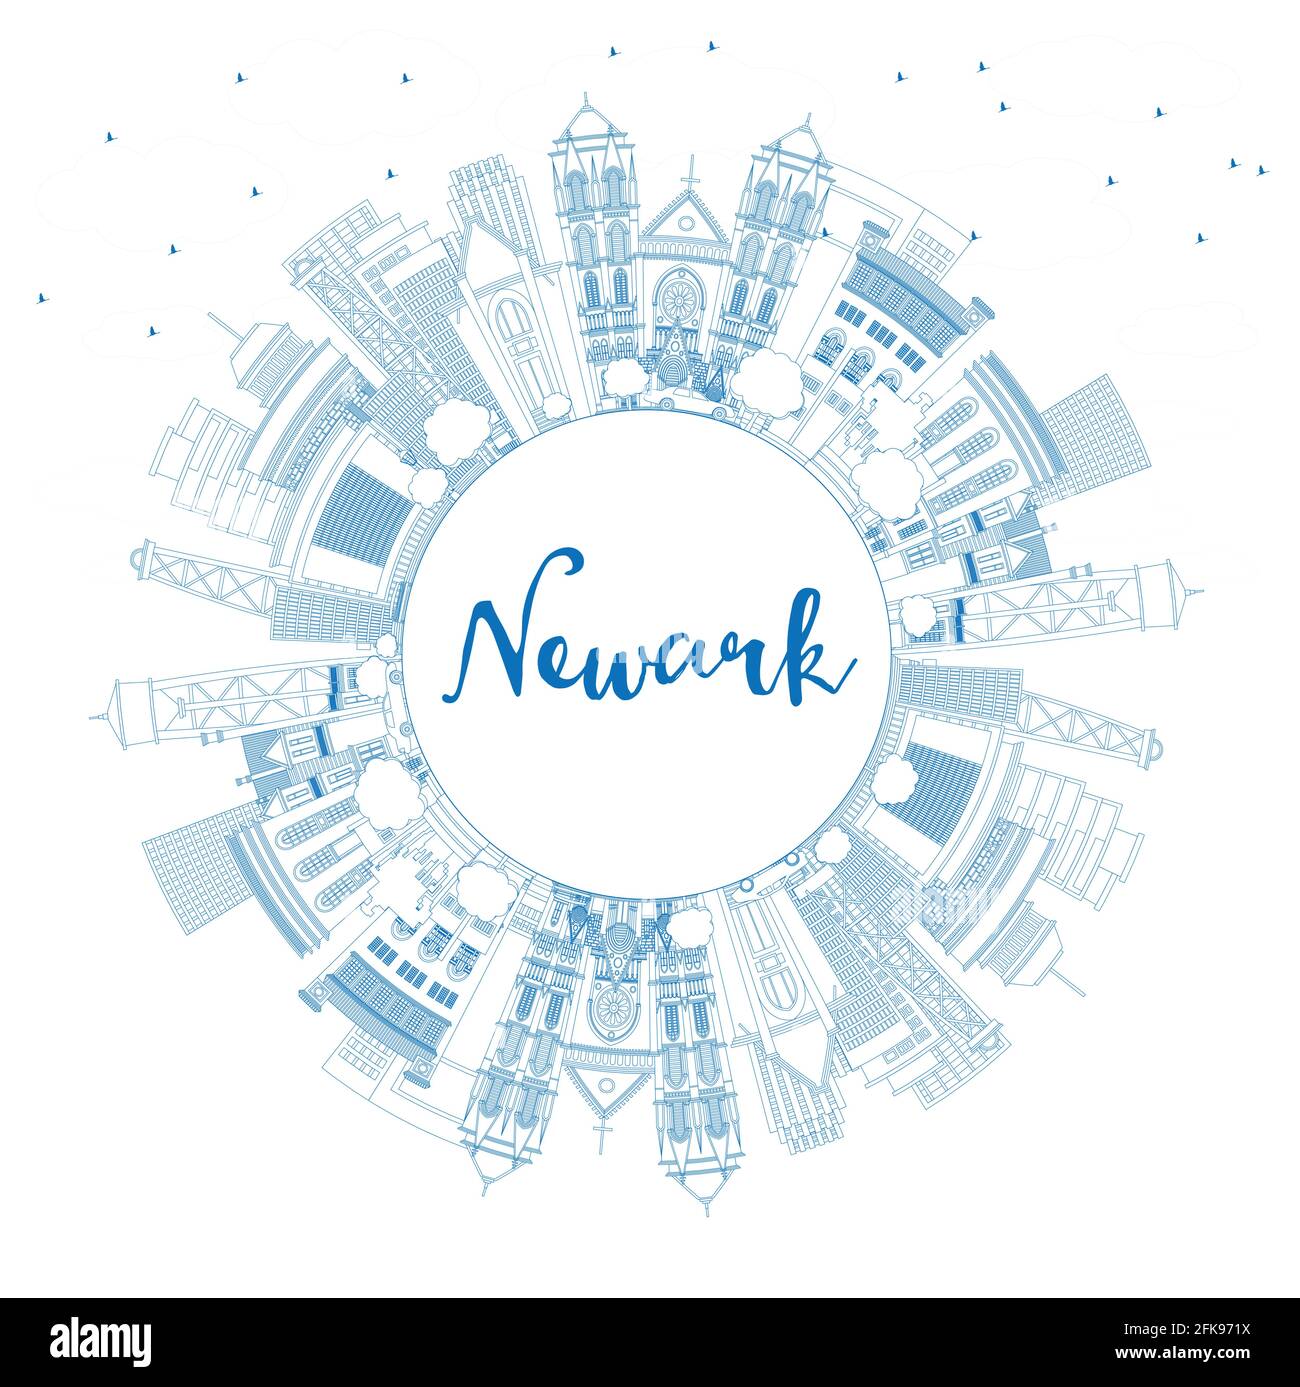 Outline Newark New Jersey City Skyline avec Blue Buildings et Copy Space. Illustration vectorielle. Newark Cityscape avec des sites touristiques. Illustration de Vecteur